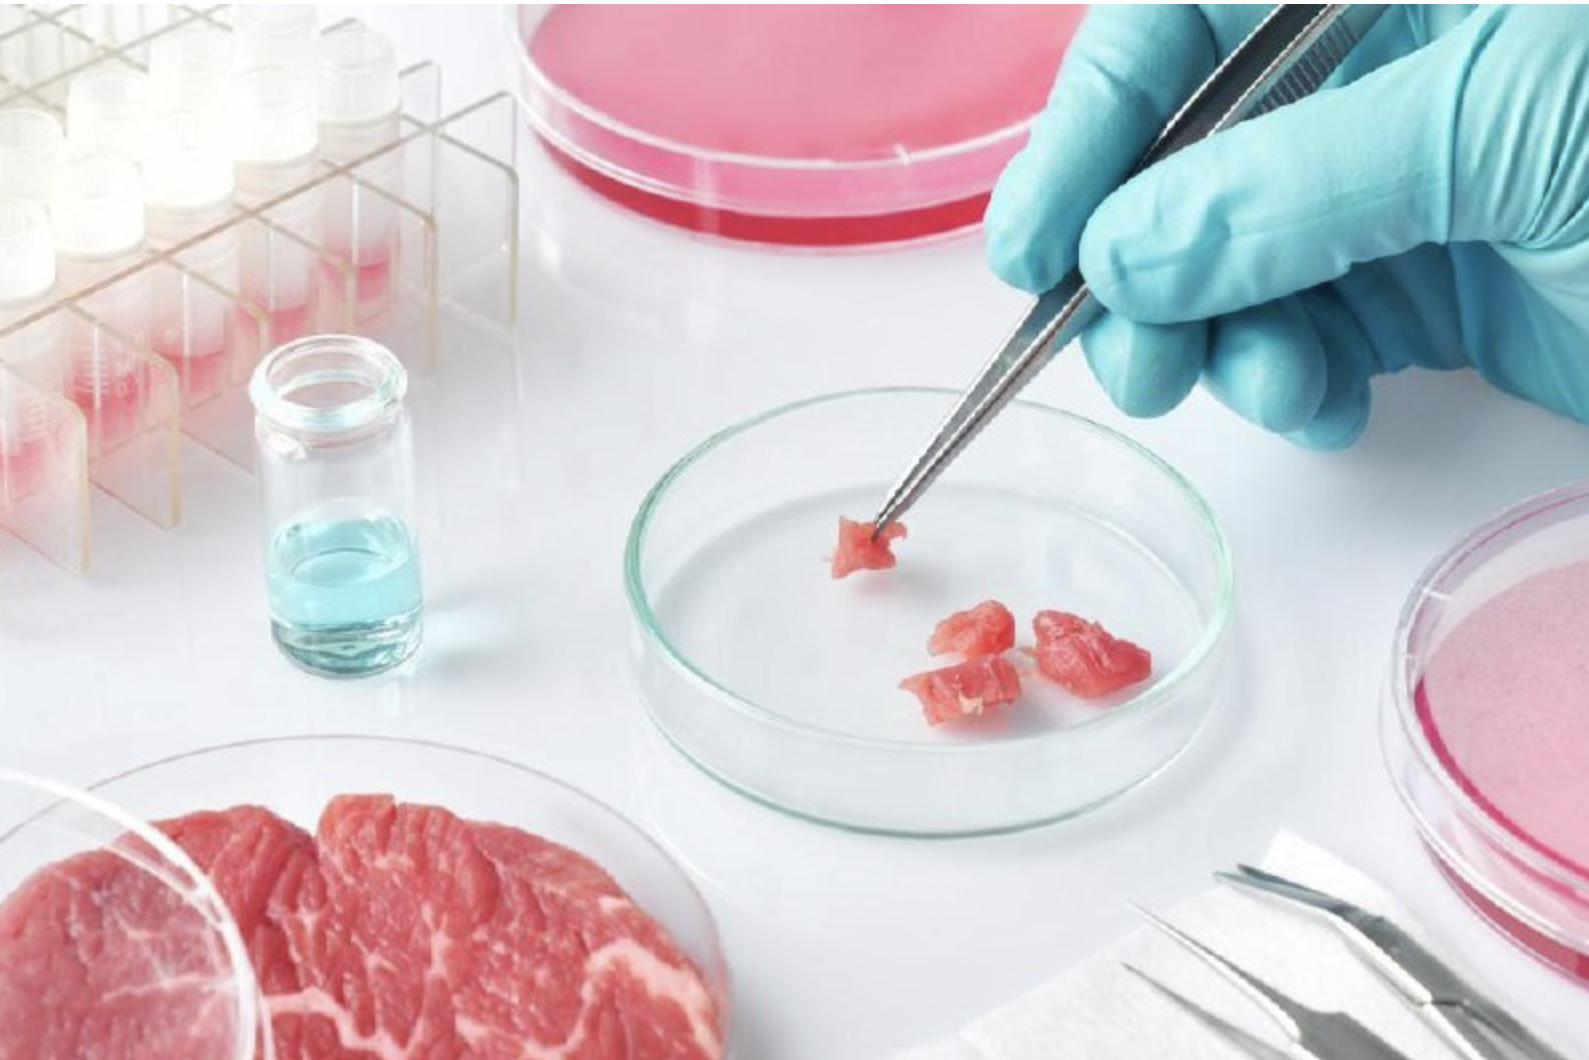 La FDA ha annunciato l’approvazione della “carne coltivata in laboratorio” dalla società UPSIDE. Indovinate chi c’è dietro ai finanziamenti di UPSIDE?